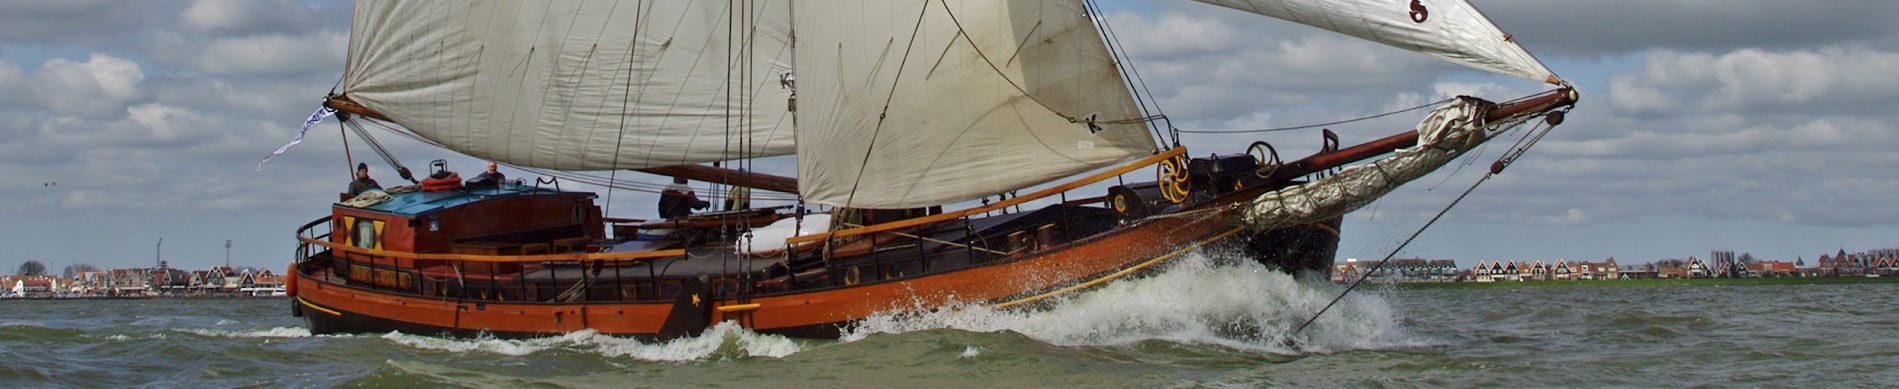 Segelschiff IJsselmeer